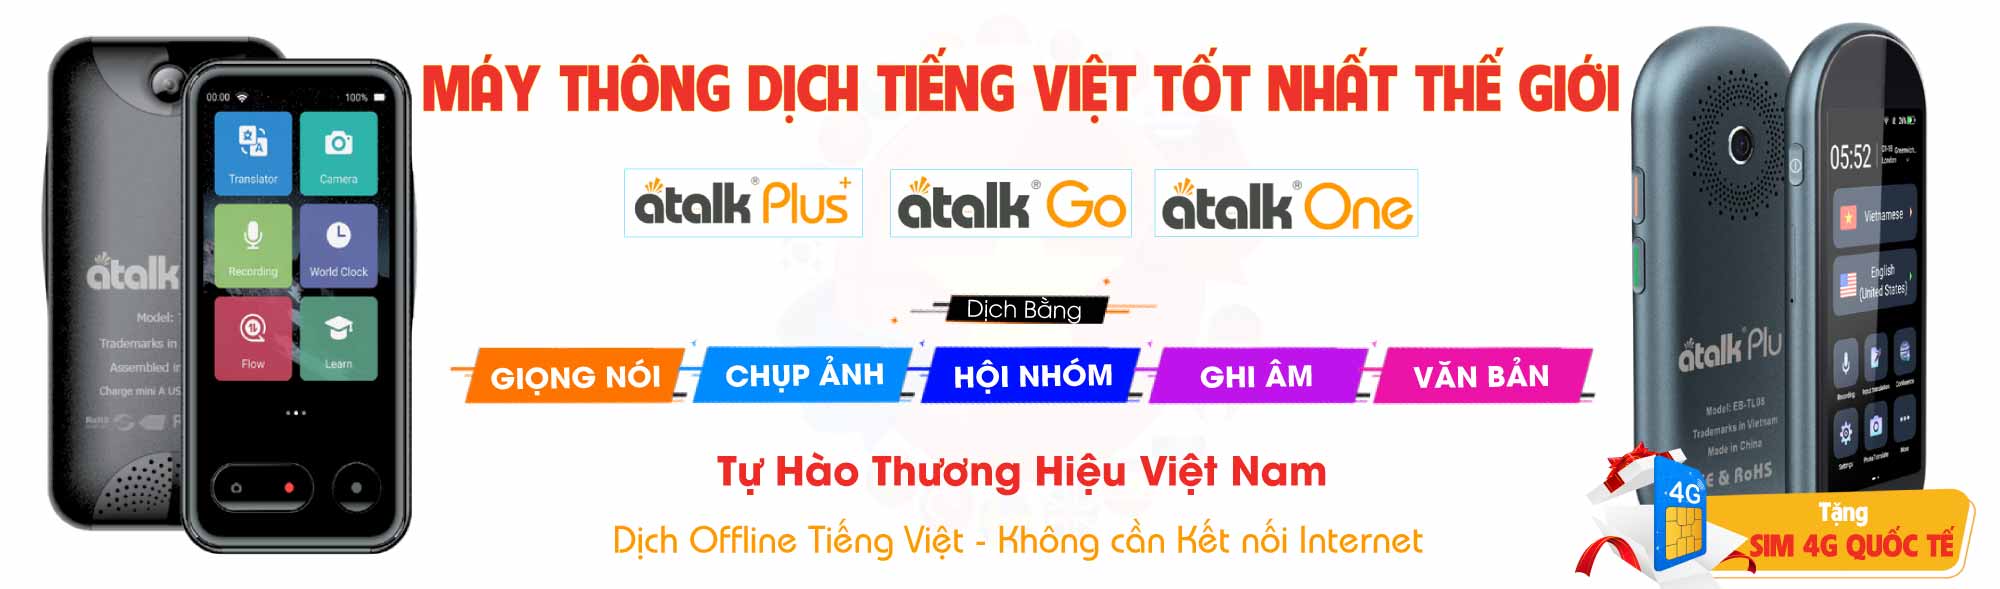 Máy Thông Dịch Tiếng Việt Tốt Nhất Thế Giới